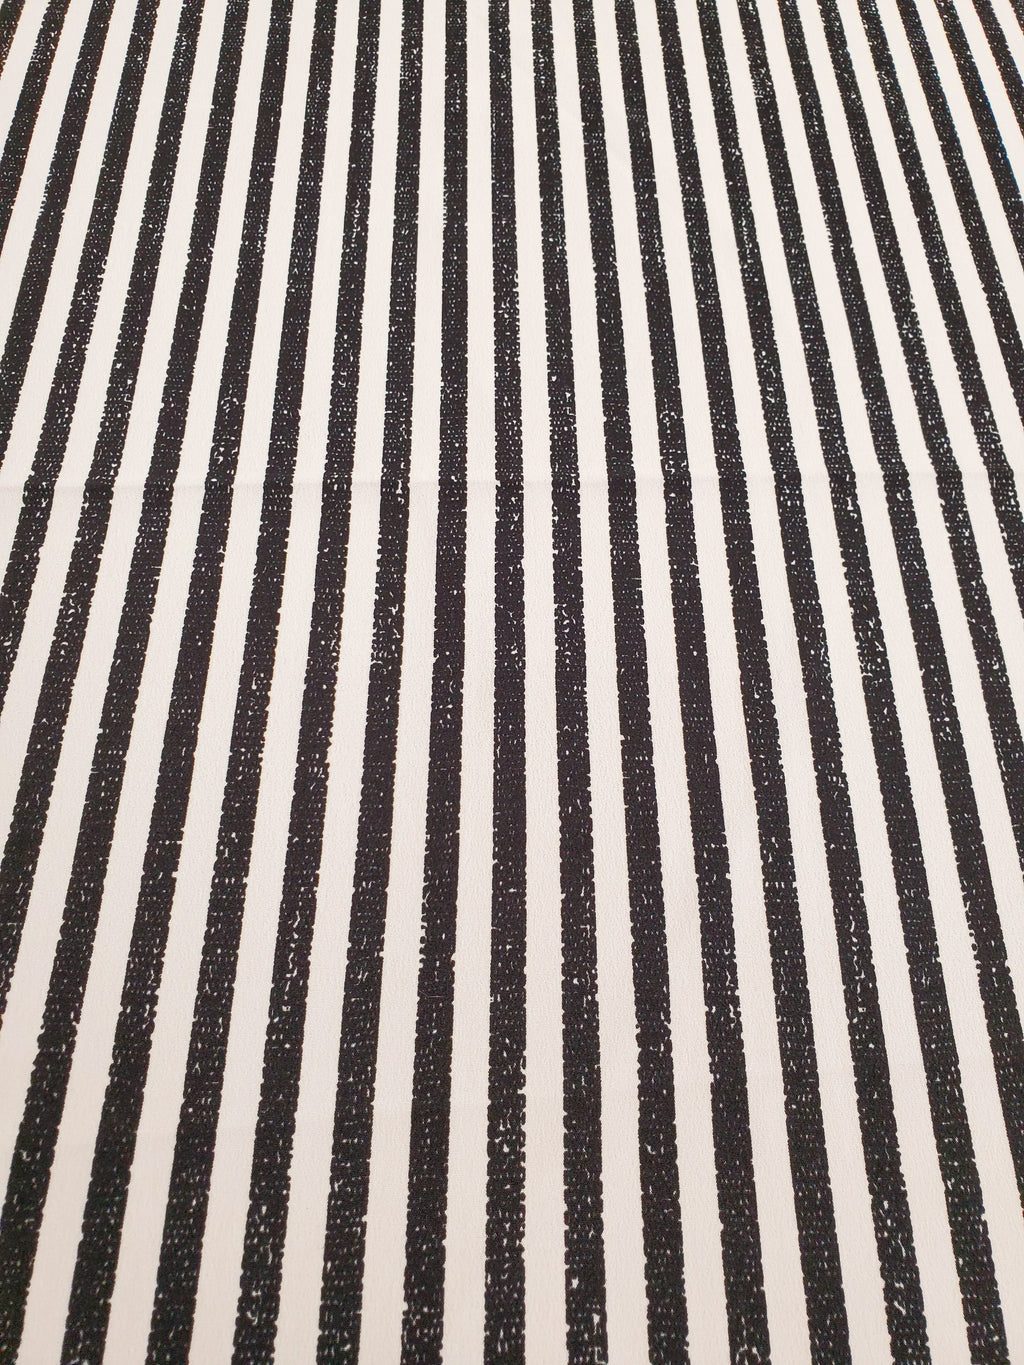 Stripes Destroyed Black/White